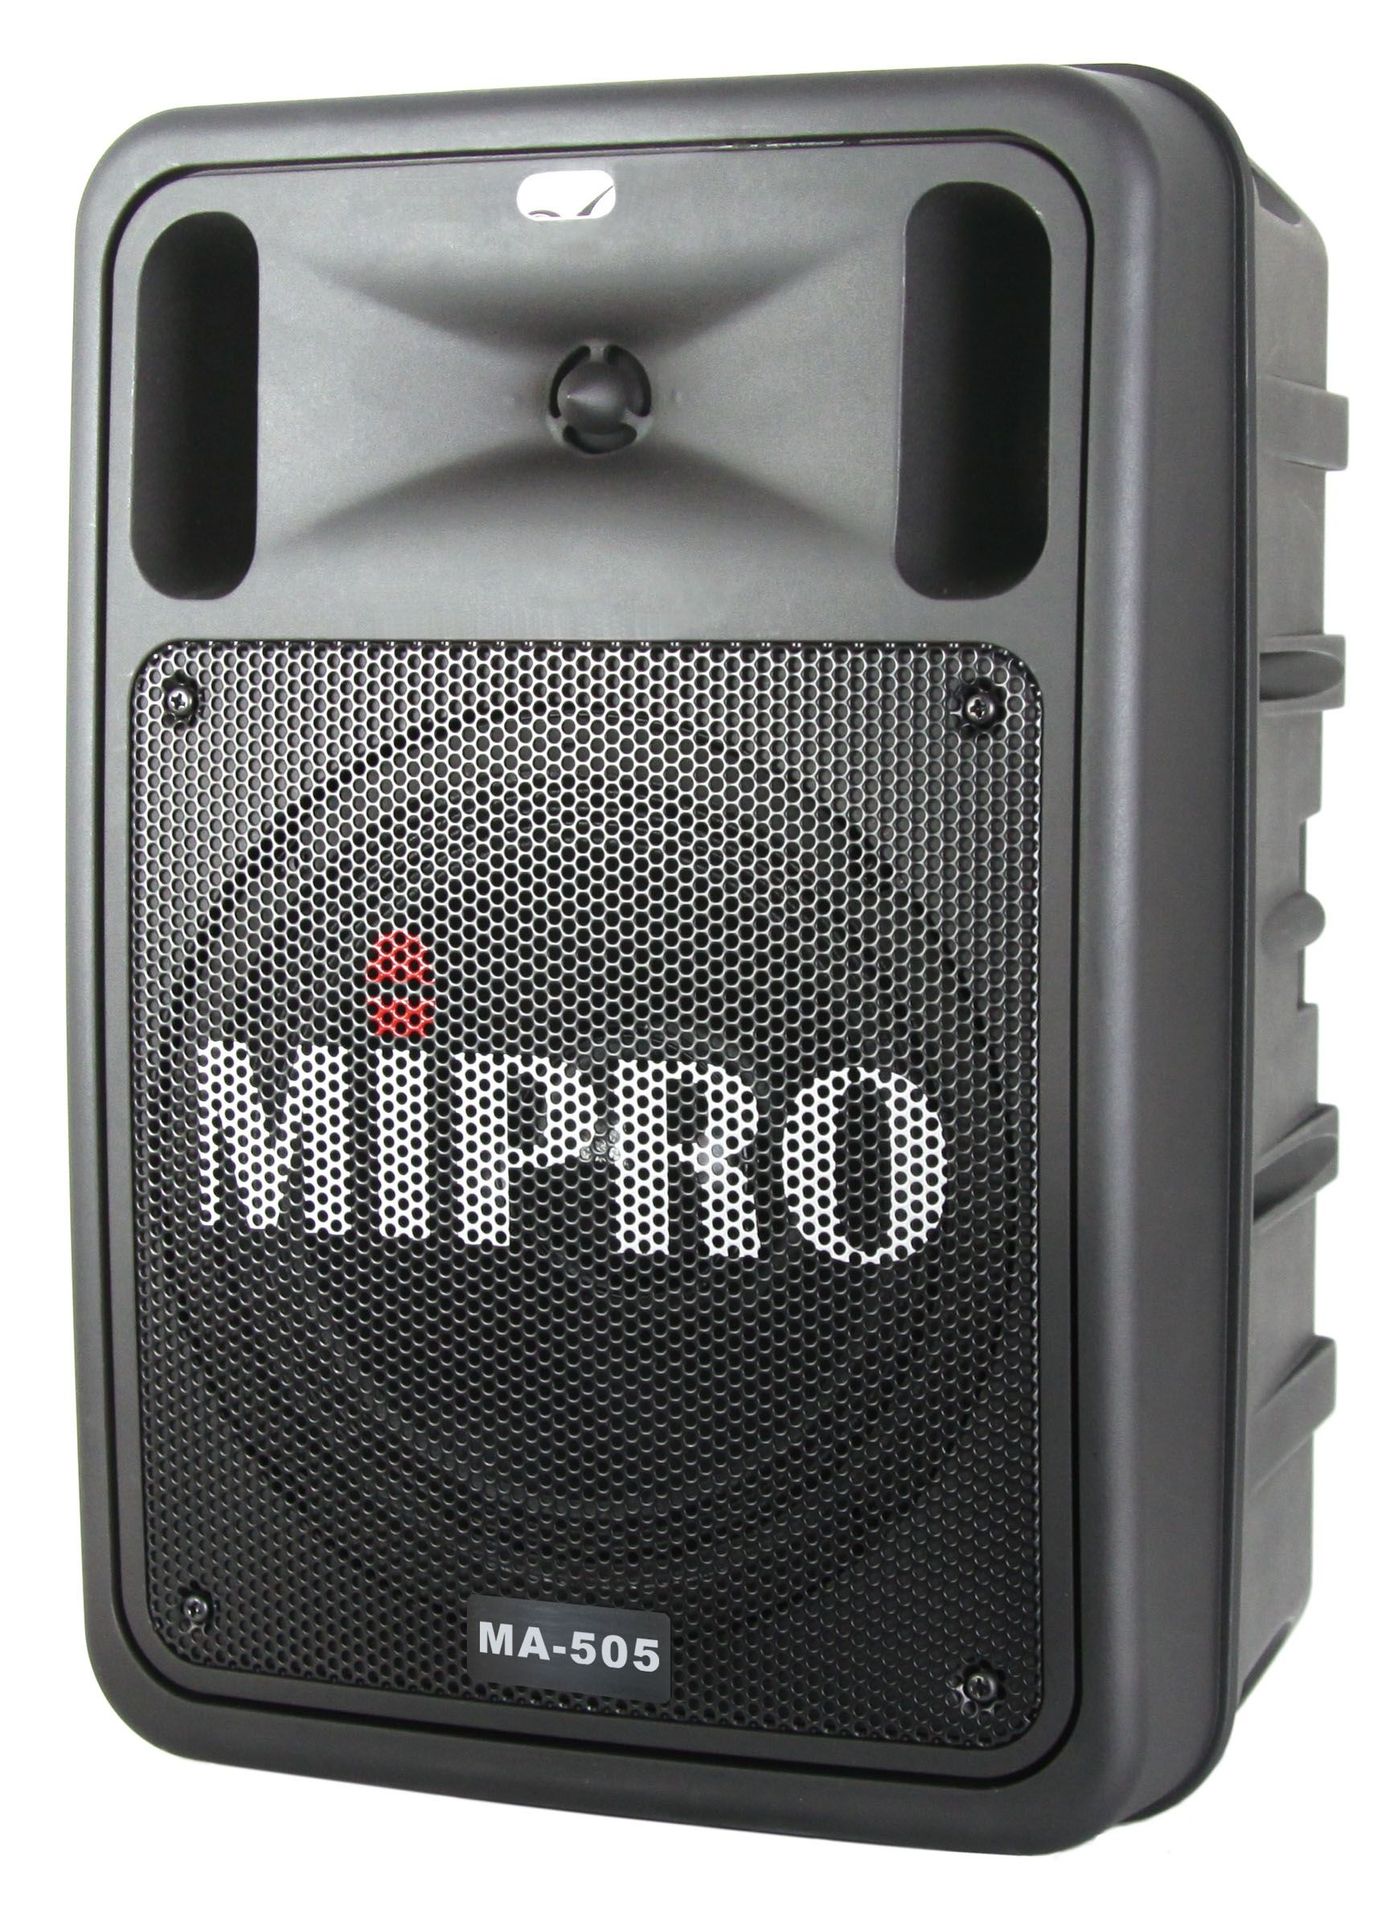 Mipro MA-505R2DPM3 Mobiles Akkubox mit 2-Kanal Funkempfänger und USB-Mediaplayer